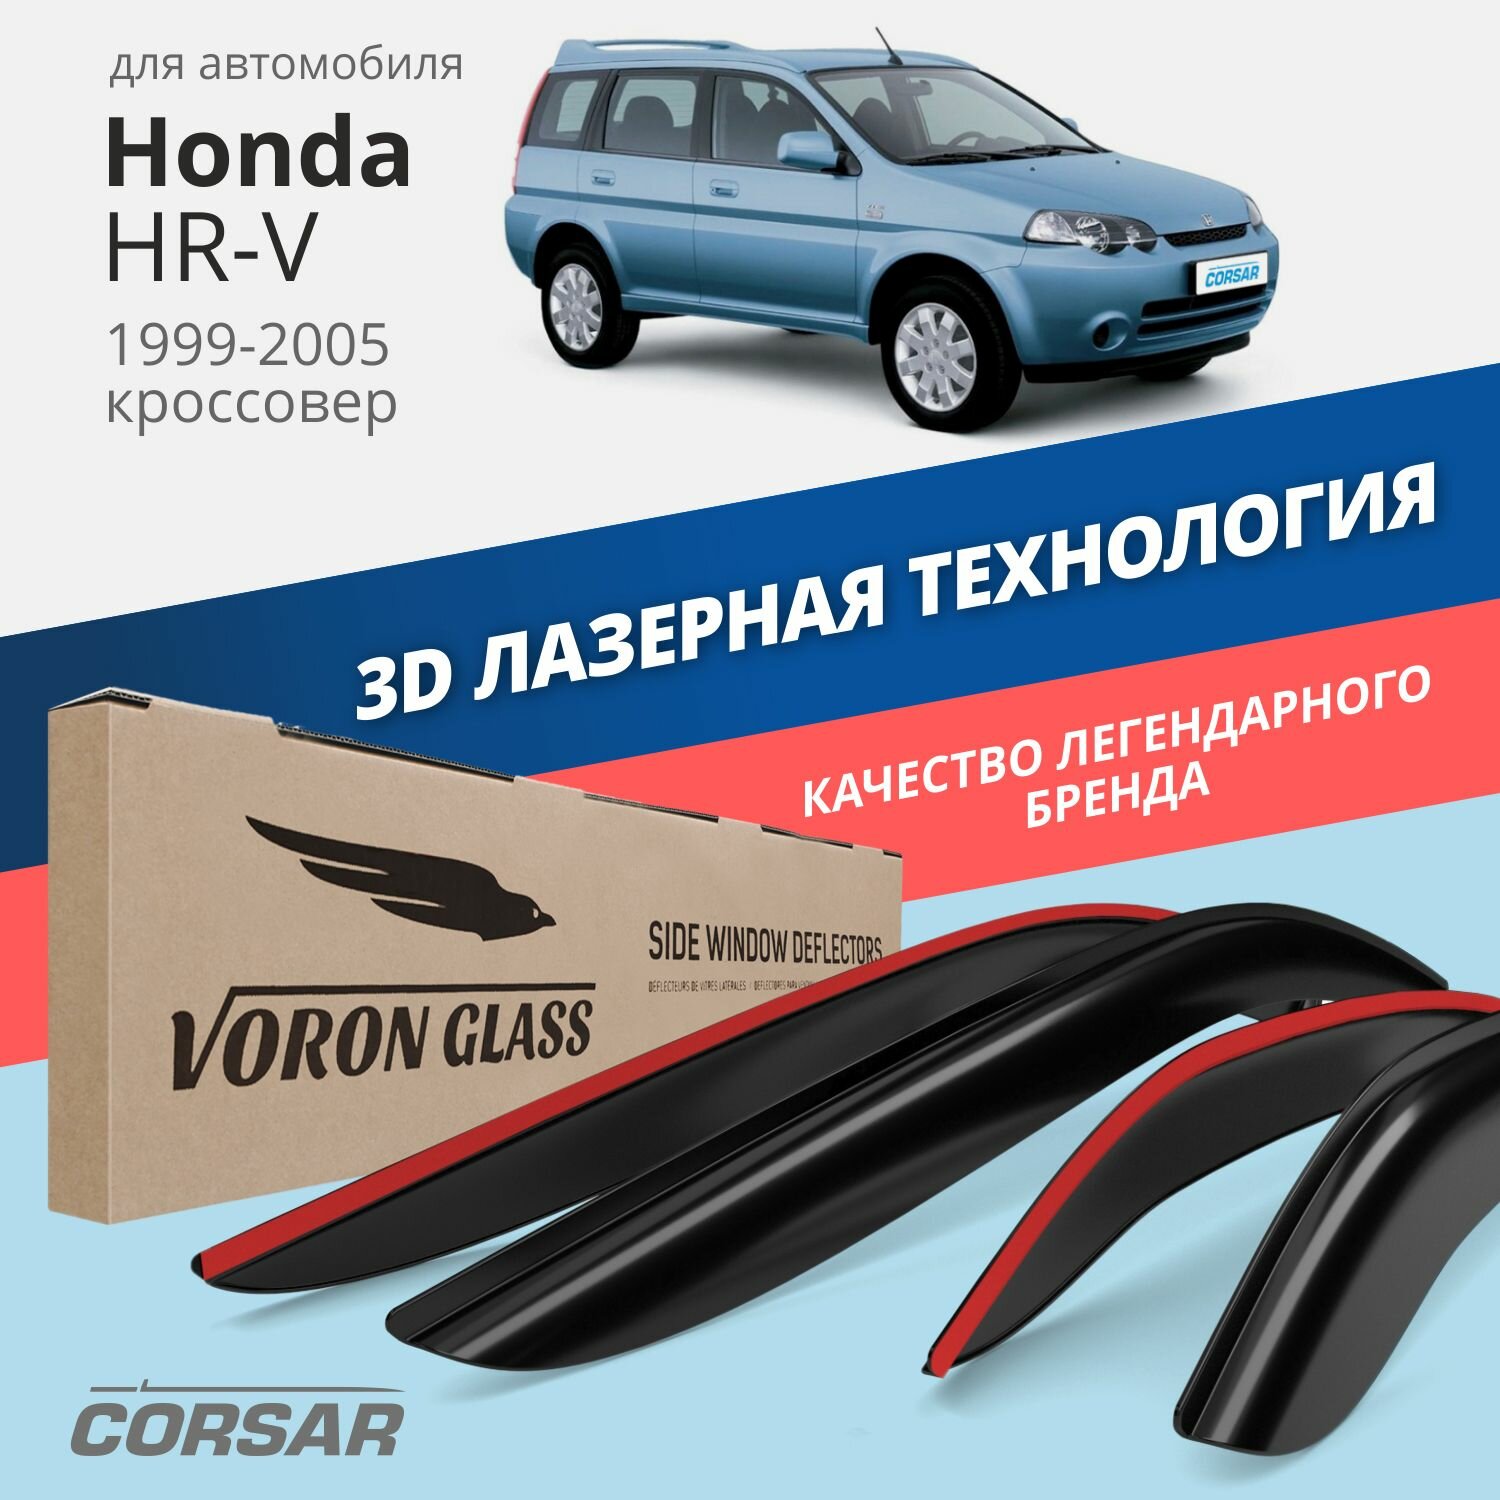 Дефлекторы окон Voron Glass серия Corsar для Honda HR-V 1999-2005 накладные 4 шт.